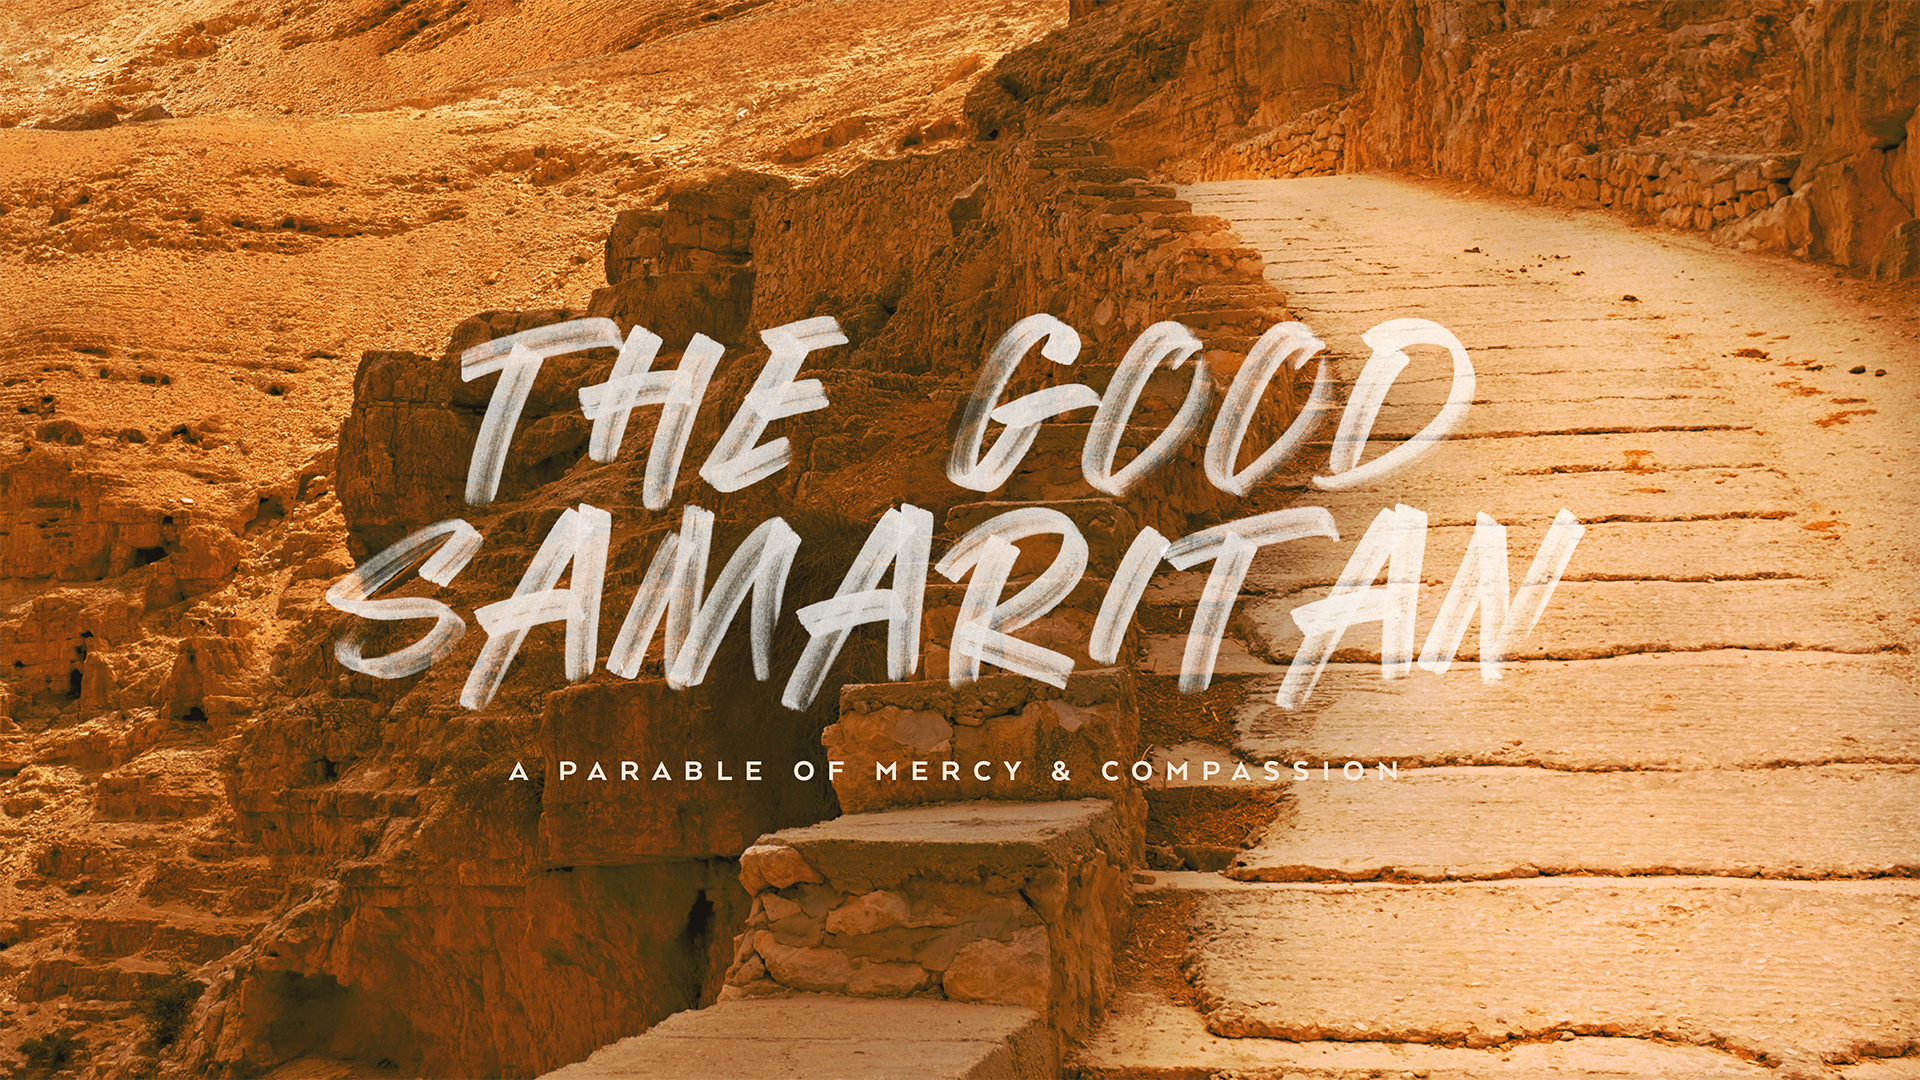 Sermon Series through “The Good Samaritan”